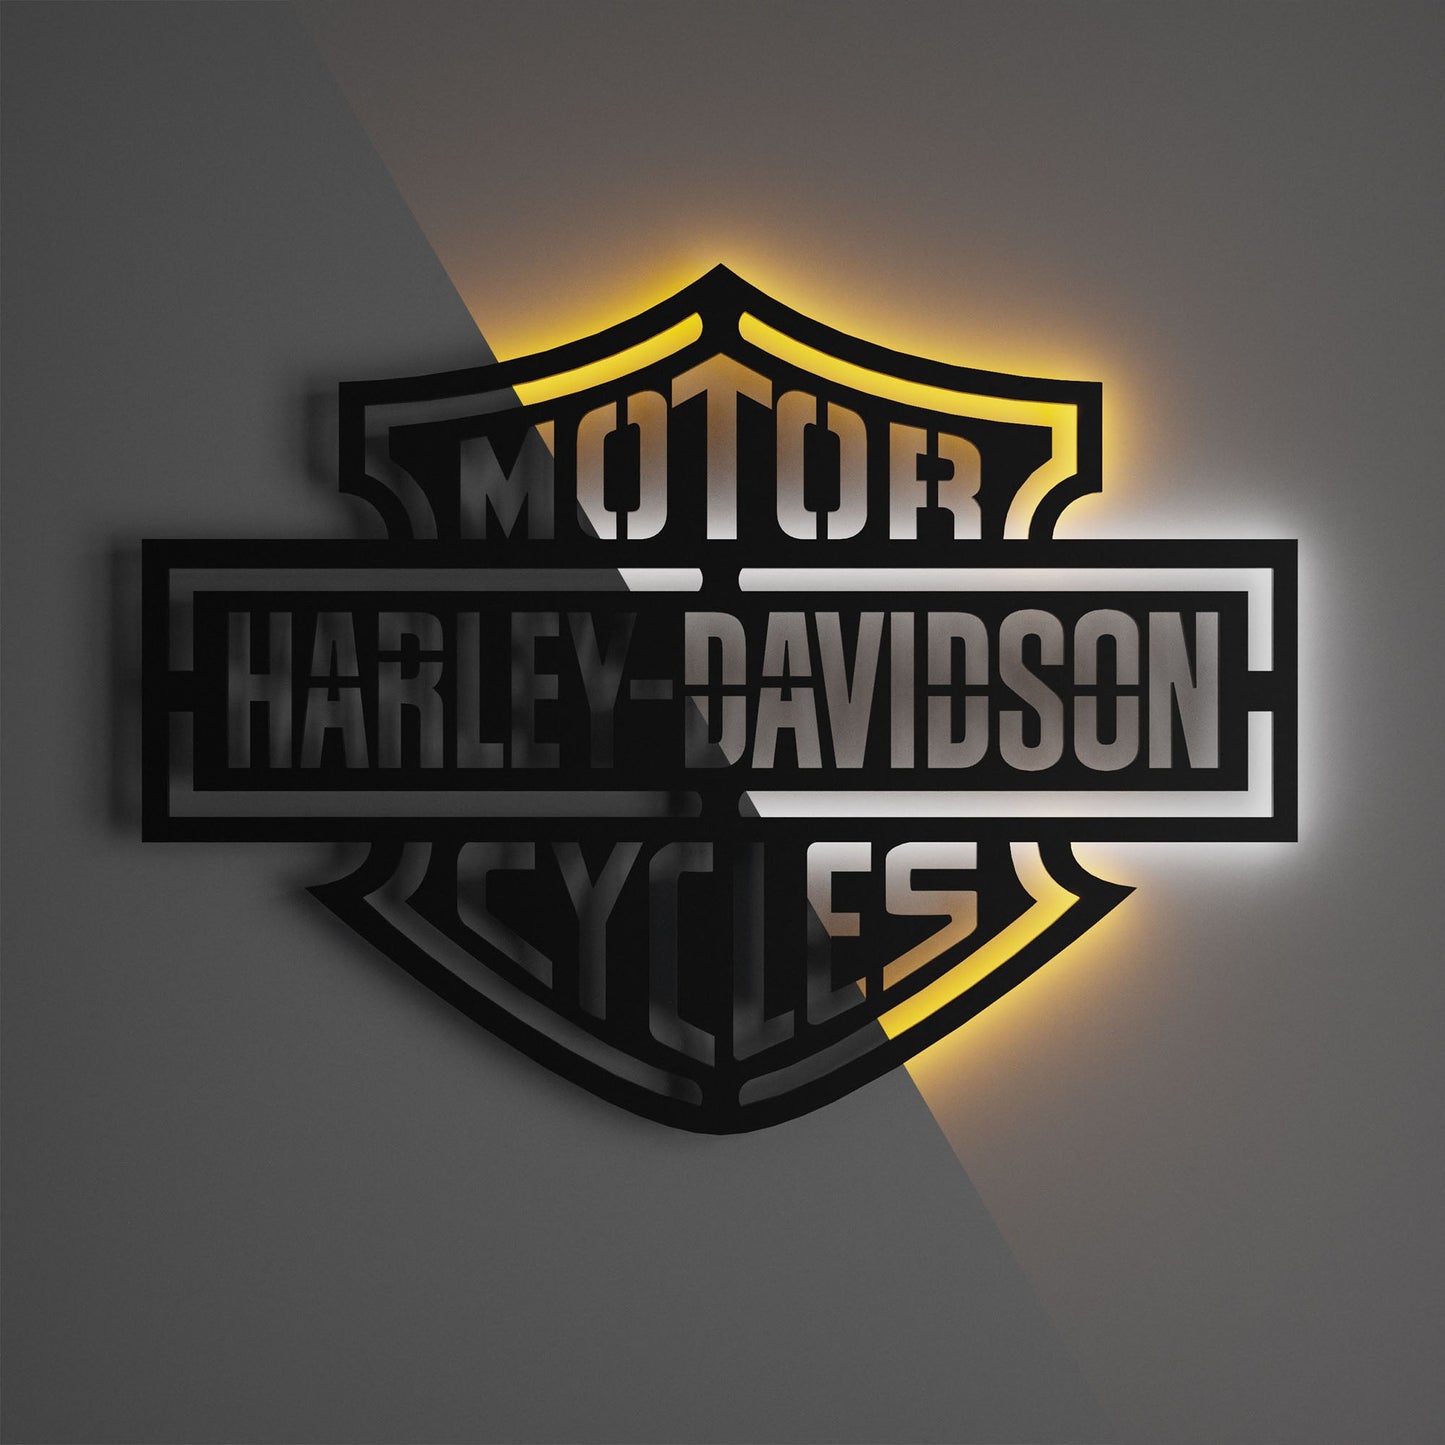 Harley Davidson Standard Wall Sign - Kutalp